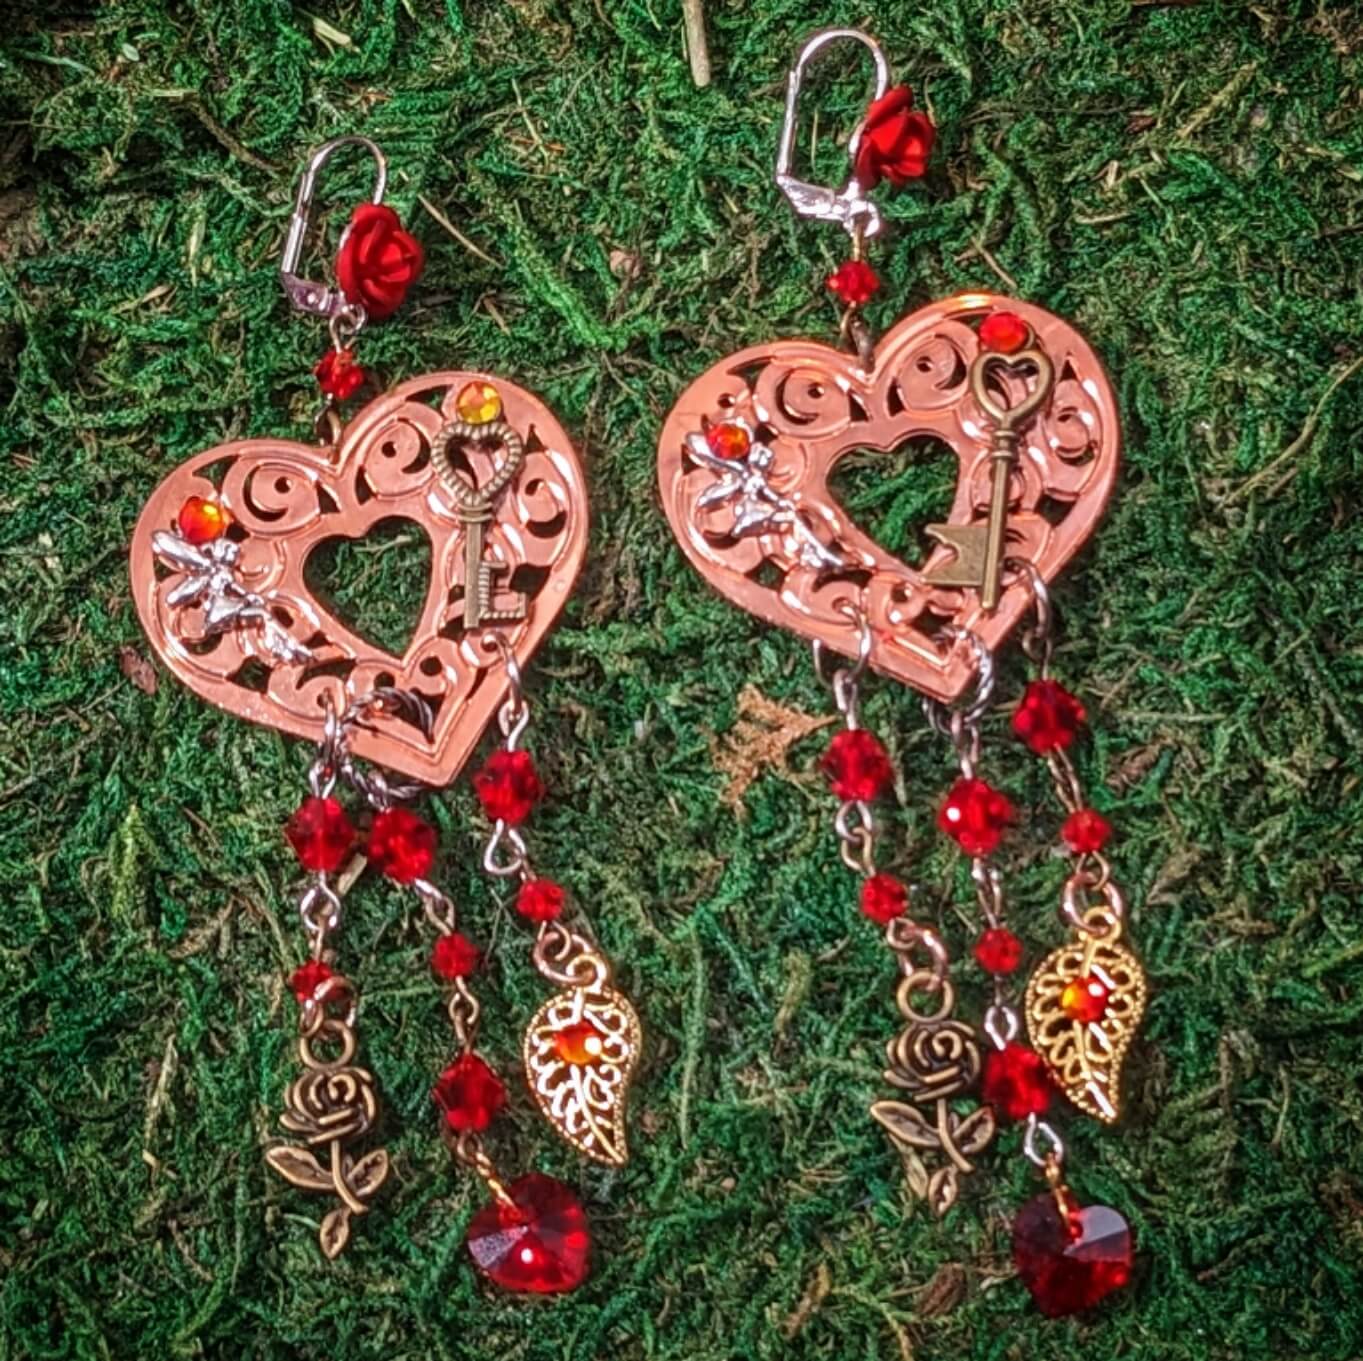 Red Chandelier Heart Earrings - Grand Love